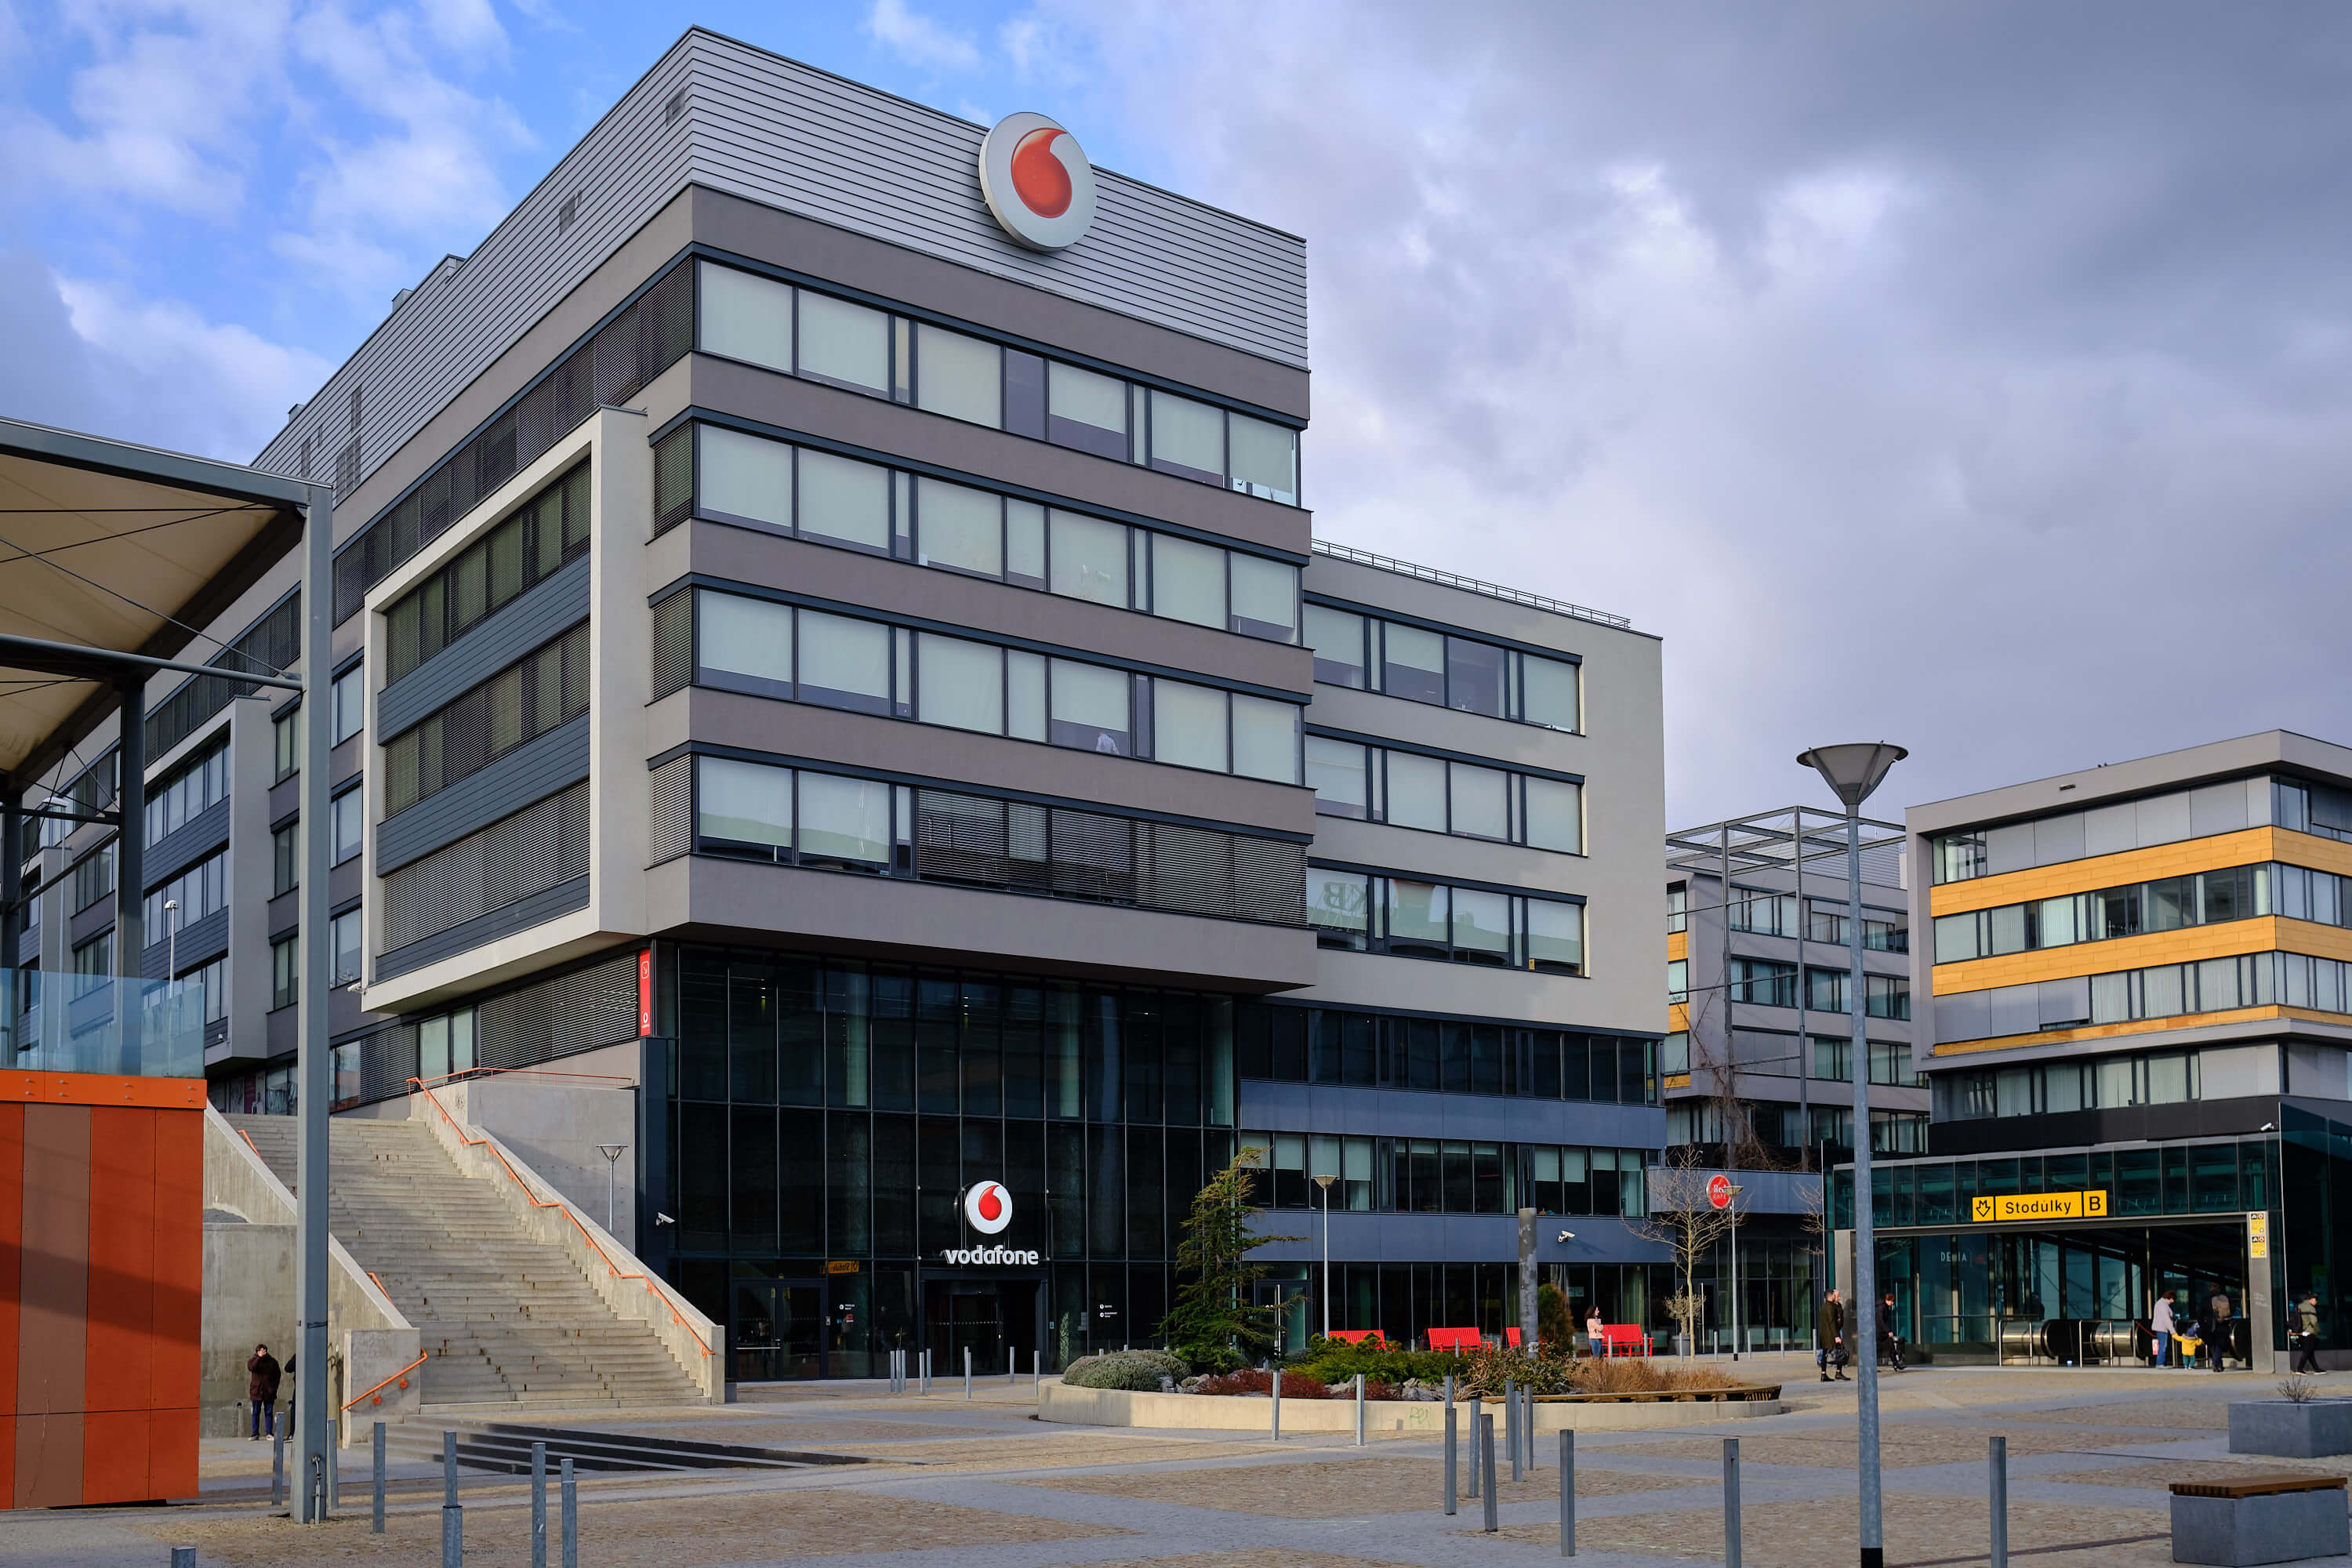 Vodafone budova ve Stodůlkách